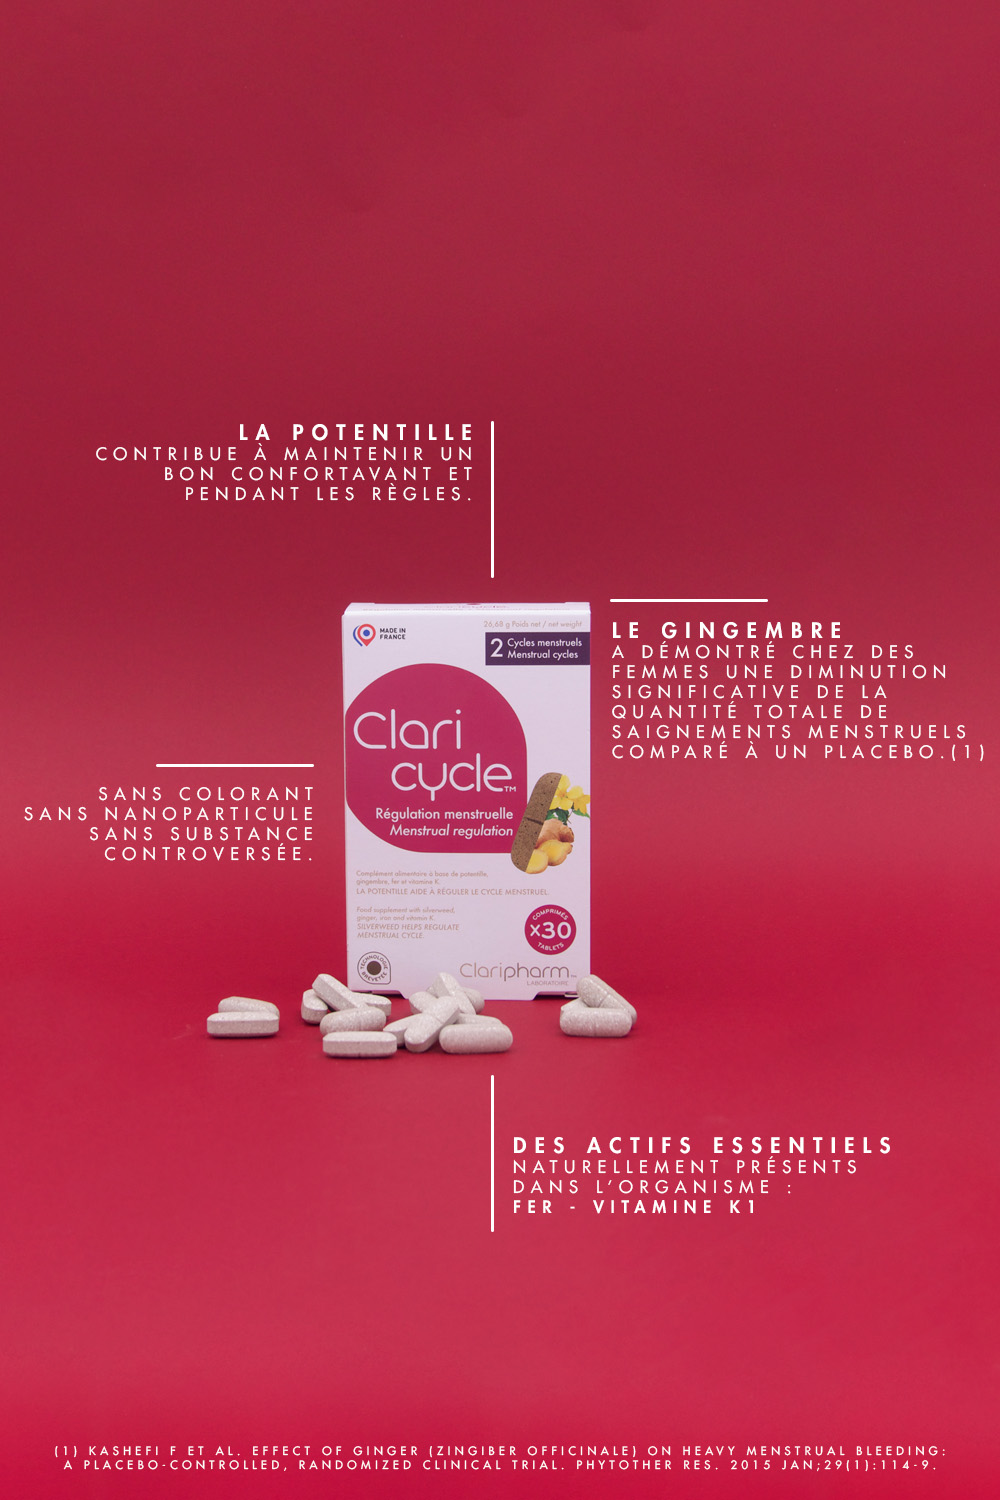 Claricycle Régulation menstruelle